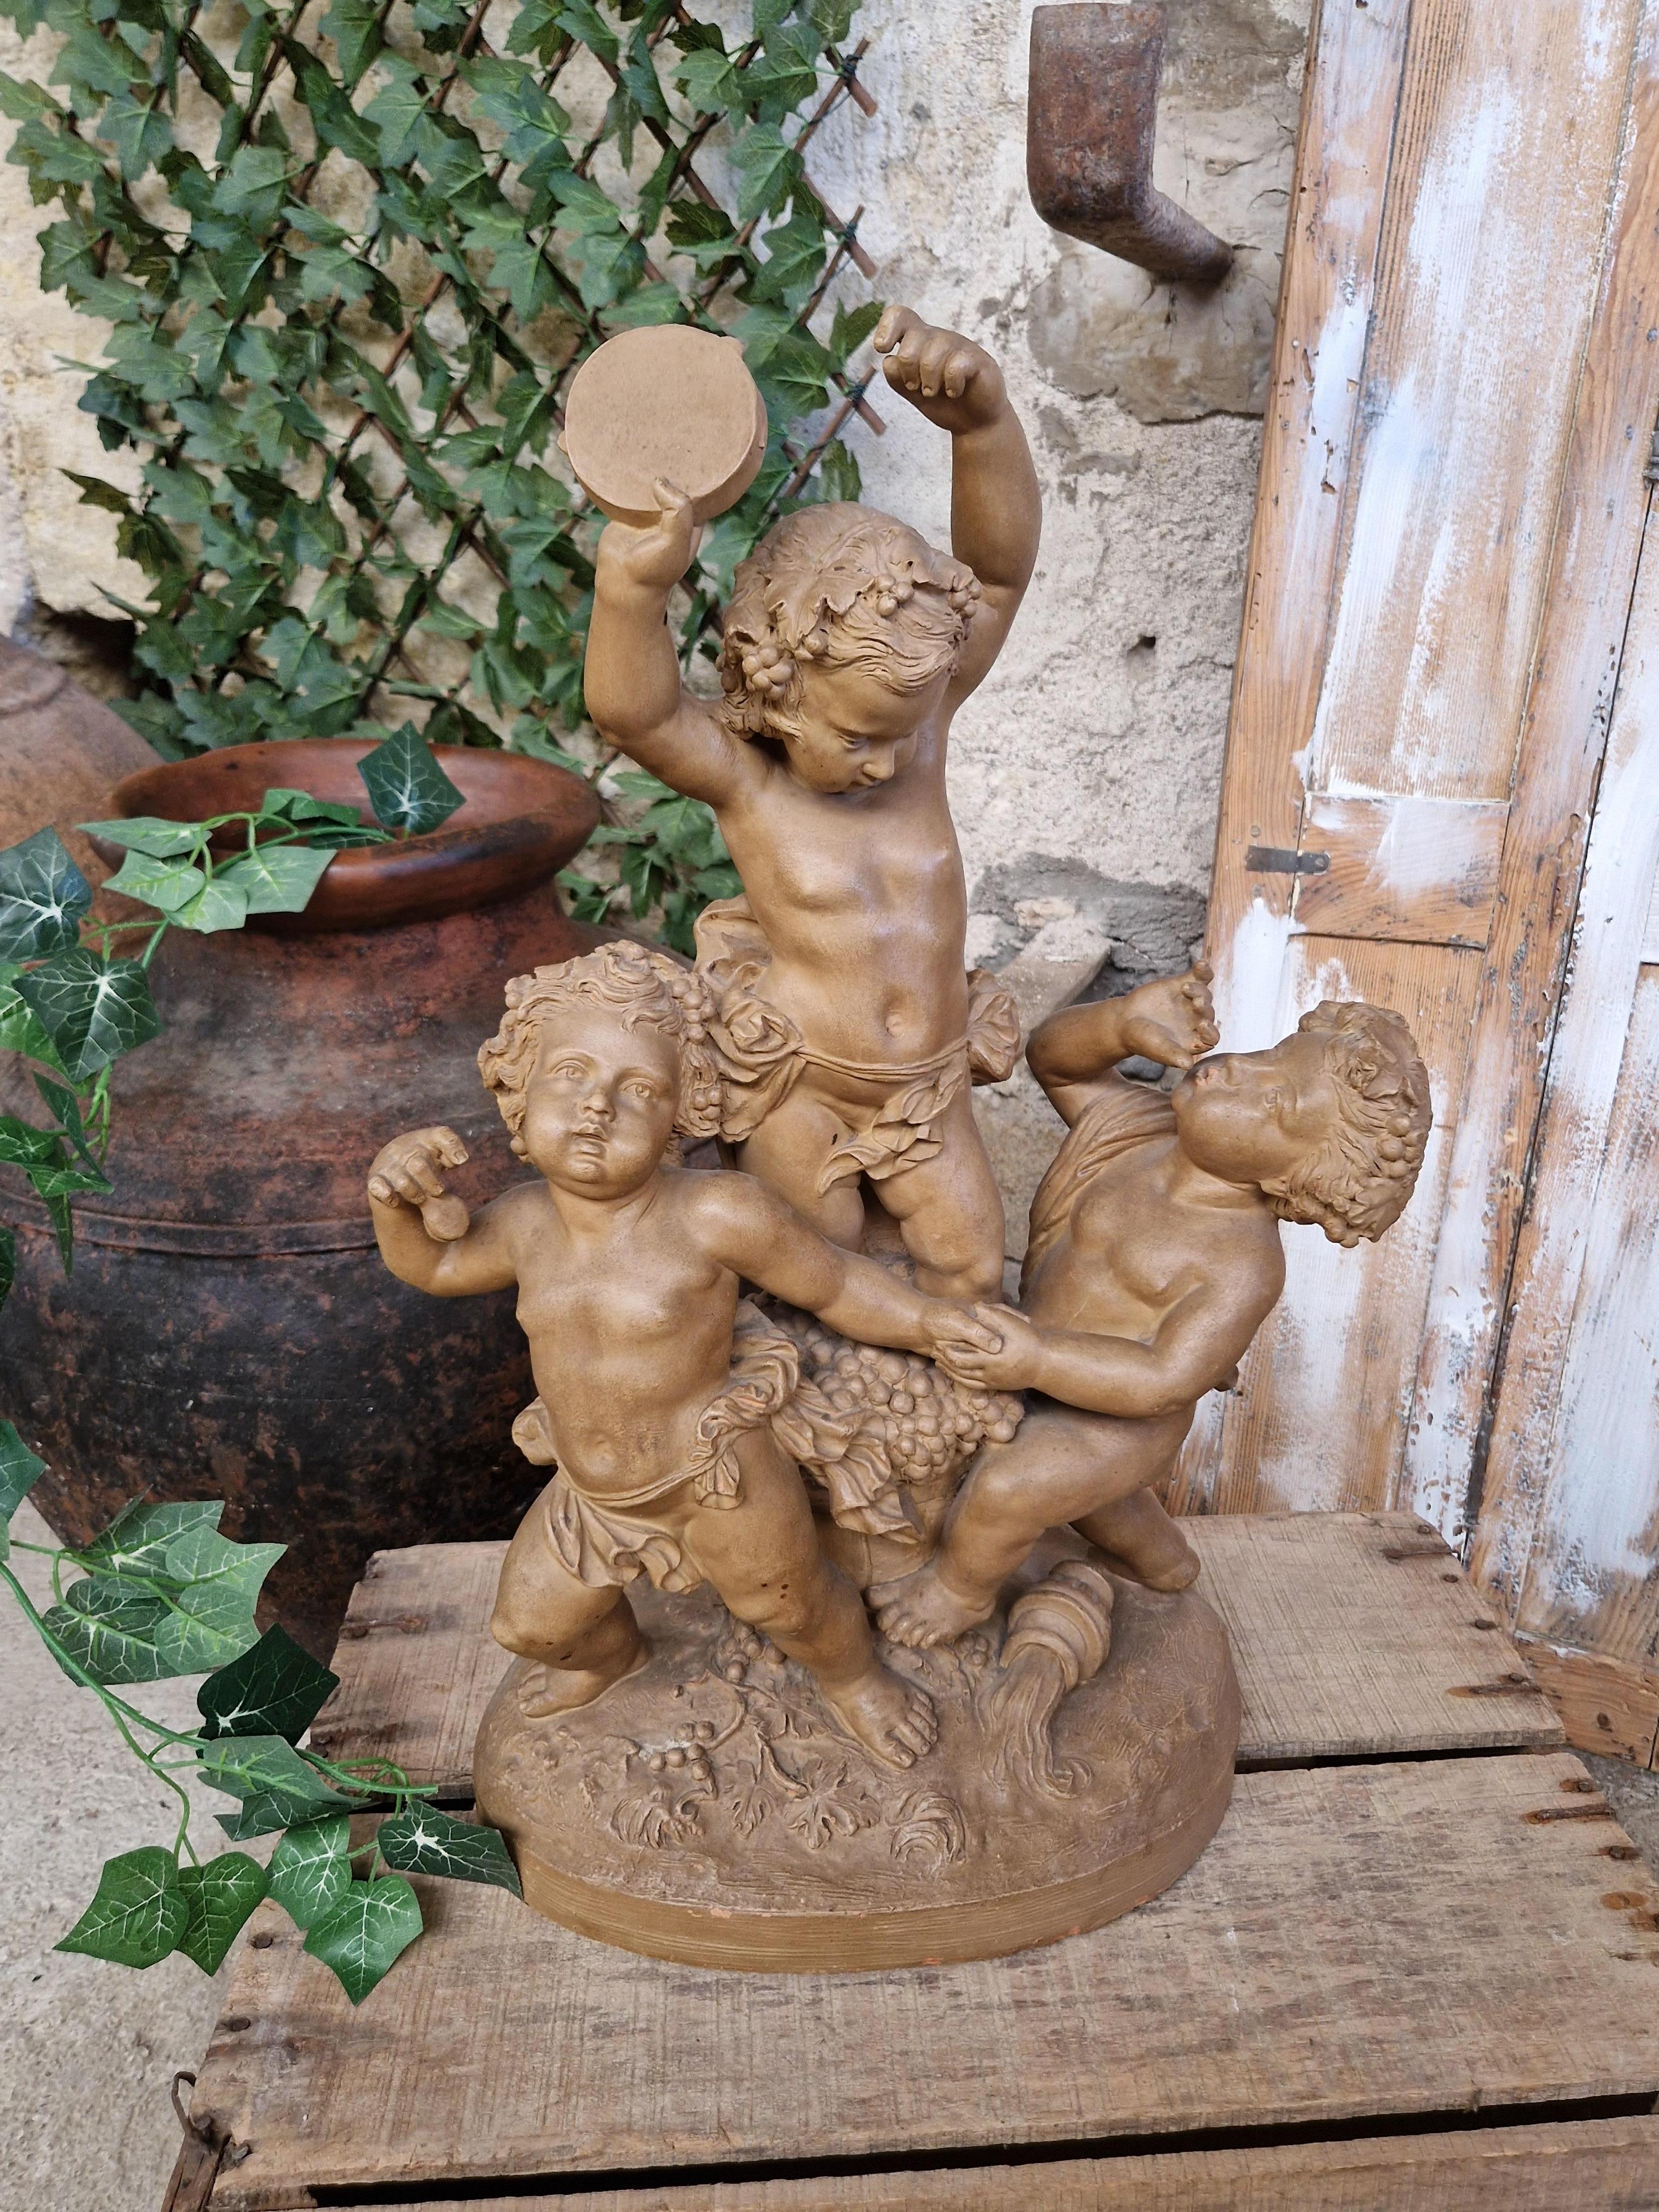 Sculpture absolument magnifique de l'artiste français I.L.A.

La statue s'appelle Dancing Cupids (Cupidons dansants)

En terre cuite avec une belle patine

Origine française

Magnifiques détails sculptés

Pièce unique

19ème siècle 

Signé 